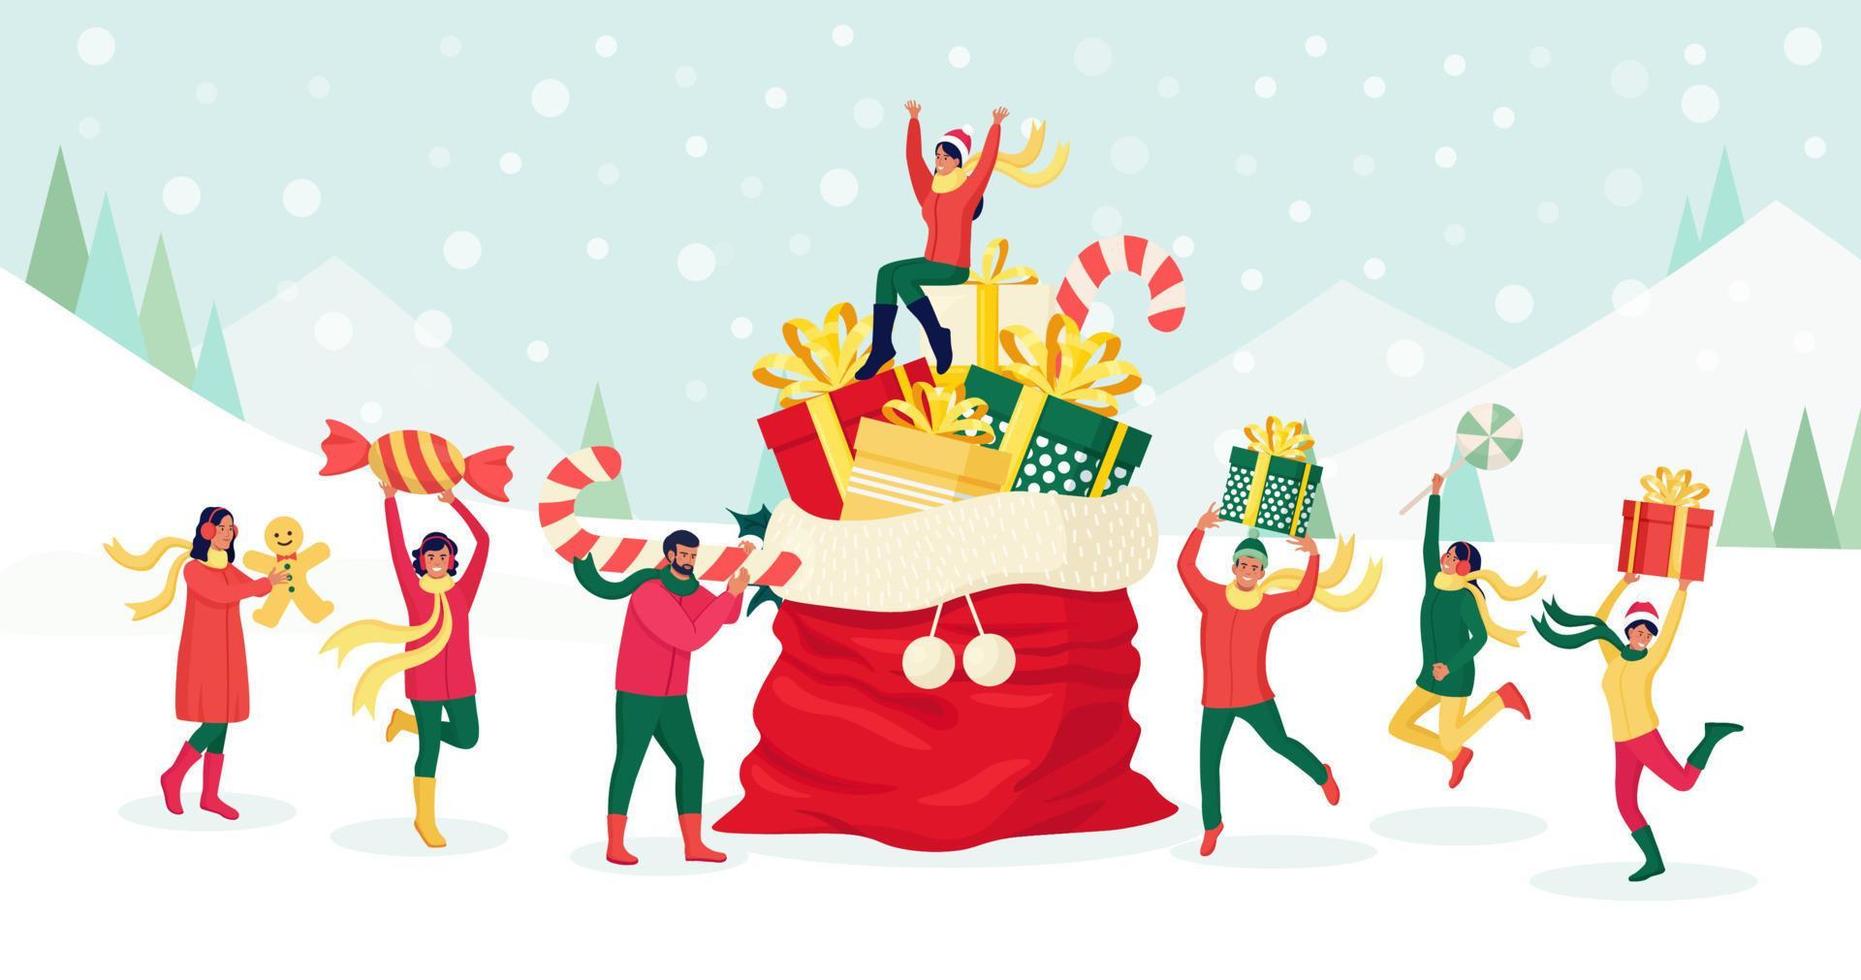 de minuscules personnes se préparent pour les fêtes de noël et du nouvel an. les personnages portent une énorme canne en bonbon, une boîte cadeau, des bonbons, un bonhomme en pain d'épice près d'un grand sac de père noël avec un tas de cadeaux et un décor festif vecteur